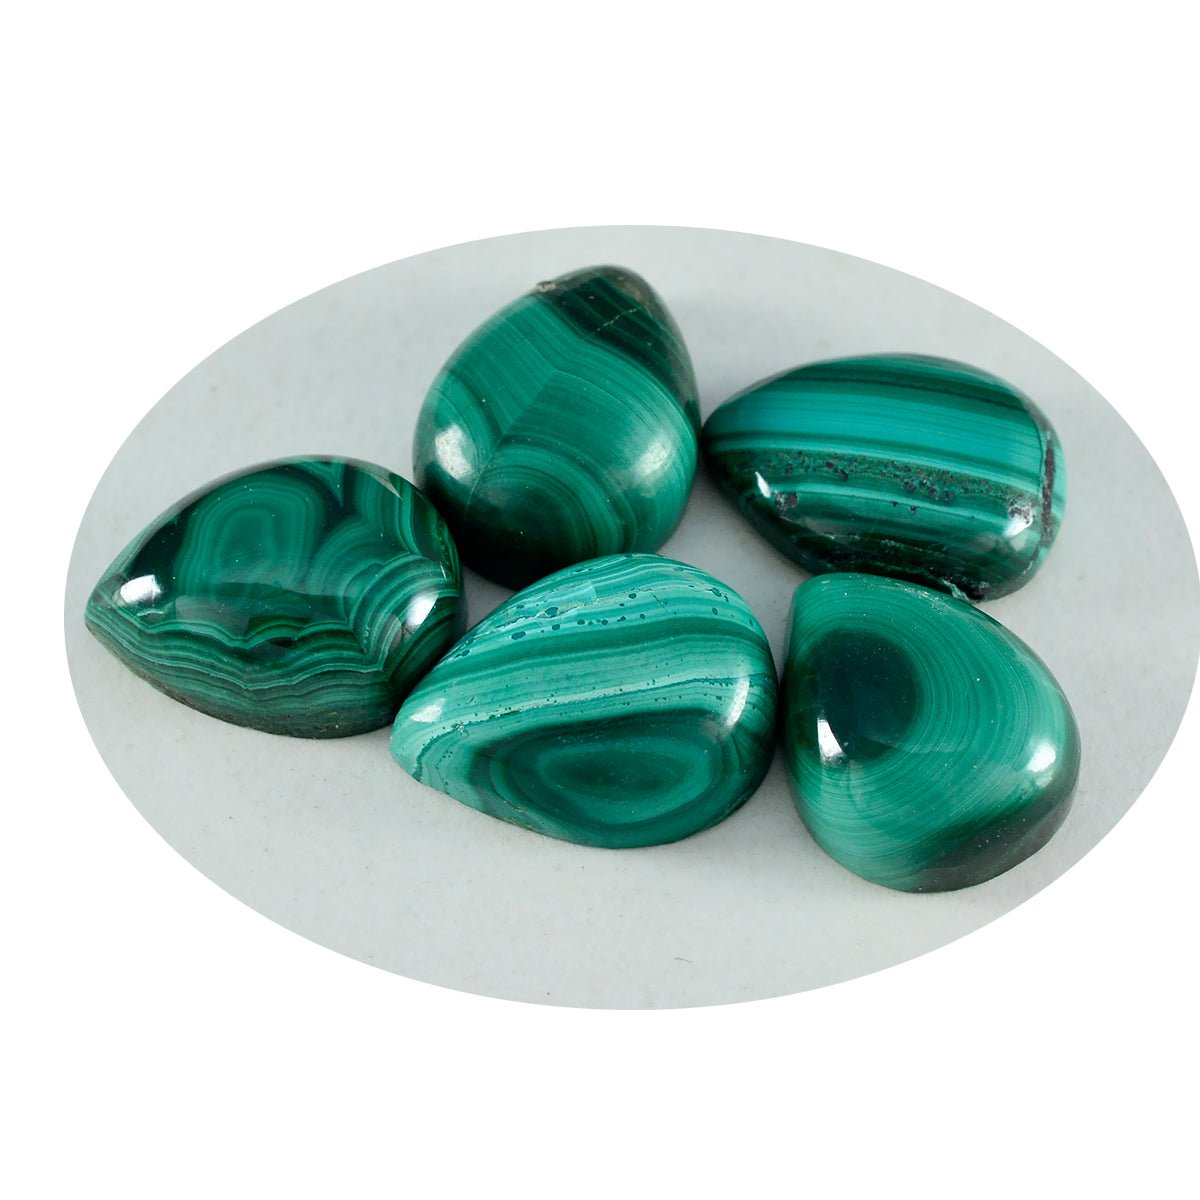 riyogems 1шт зеленый малахитовый кабошон 12x12 мм грушевидной формы, красивый качественный драгоценный камень